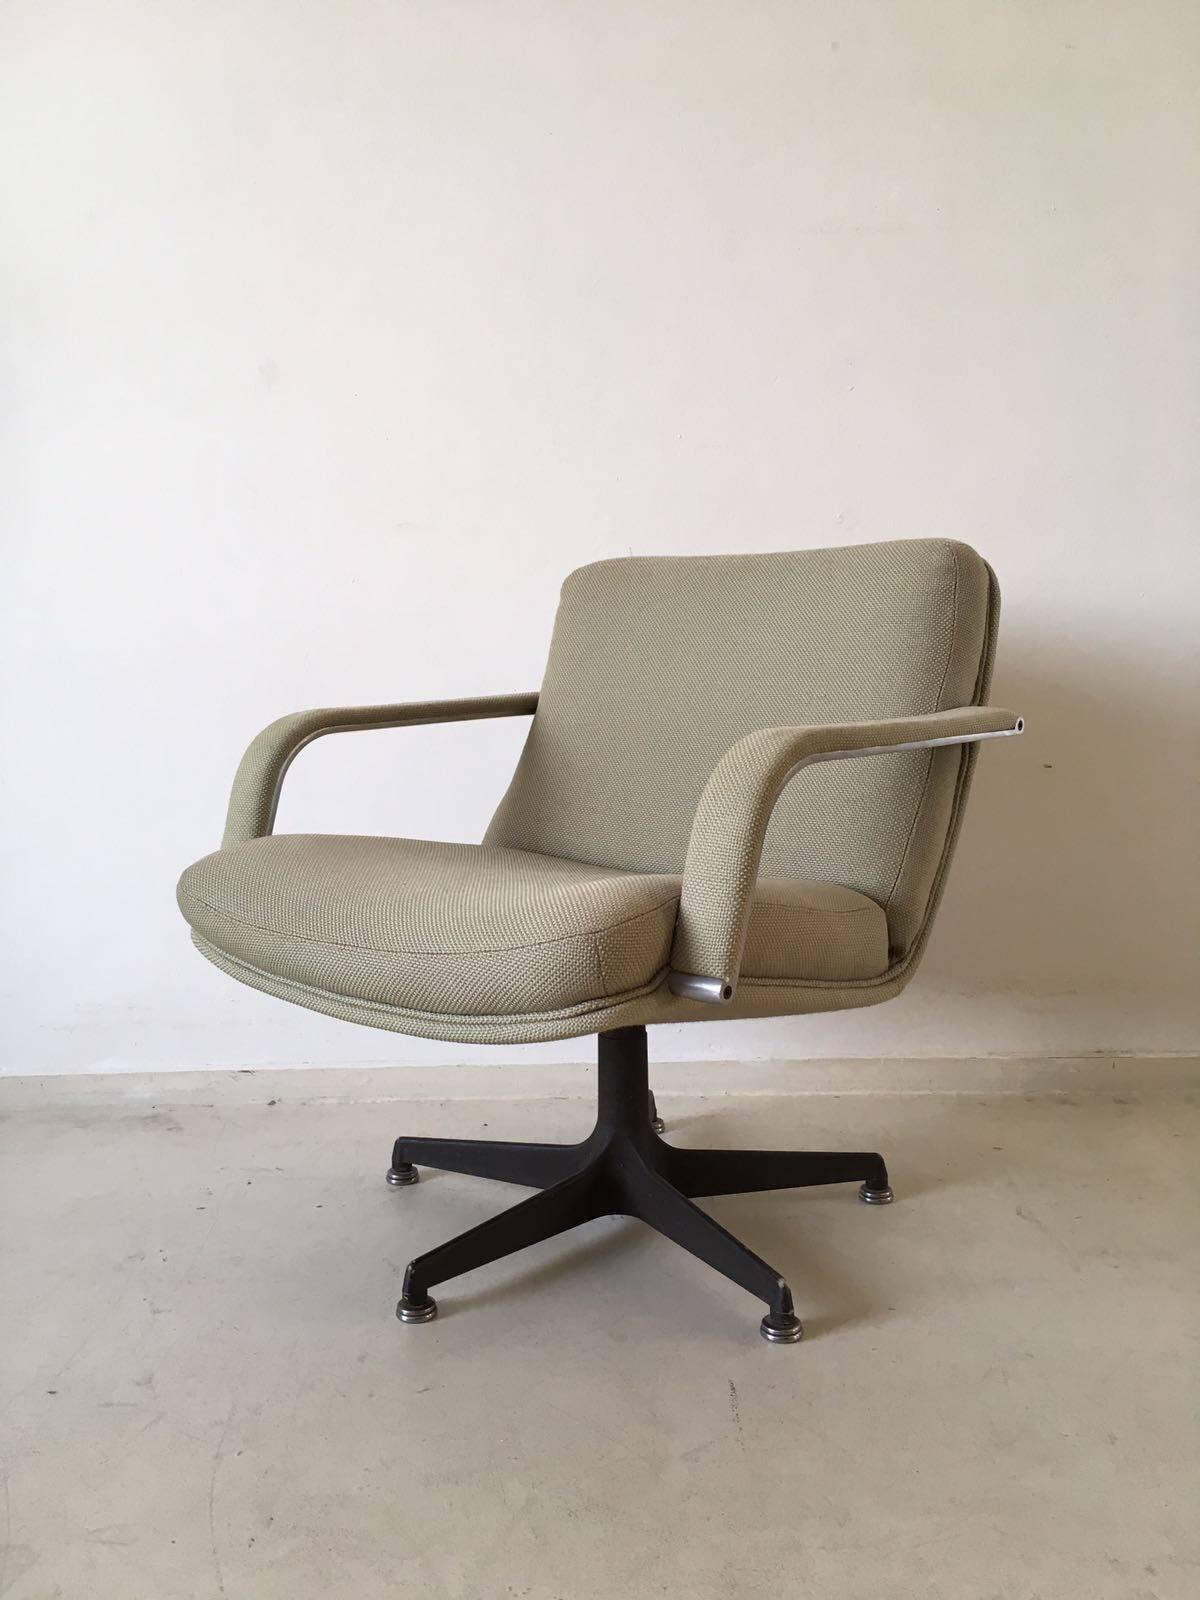 Originaler holländischer Drehsessel aus den 1970er Jahren von Geoffrey Harcourt für Artifort. Der Stuhl ist in sehr gutem Zustand und sitzt sehr bequem. Der Stuhl ist mit der originalen Wollpolsterung und einem drehbaren schwarzen Metallfuß